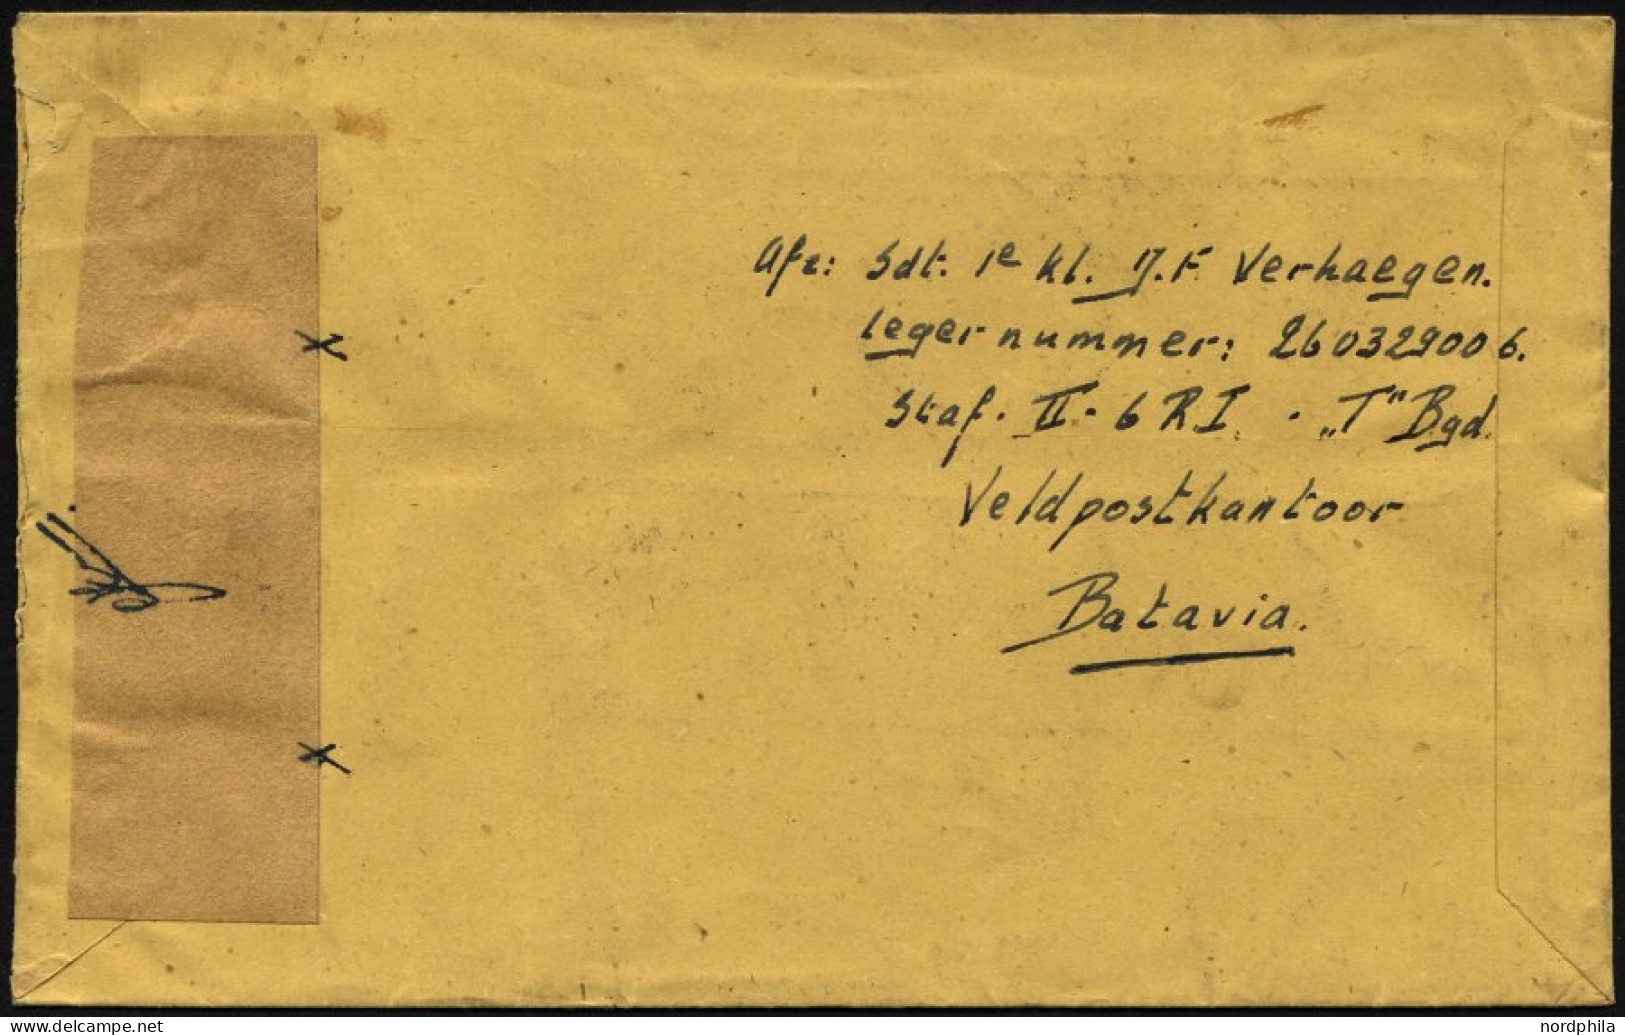 NIEDERLÄNDISCH-INDIEN 1947, K2 VELDPOST-SEMARANG/2/1947 Und Handschriftlich Im Aktiven Dienst Auf Luft-Feldpostbrief Von - Niederländisch-Indien